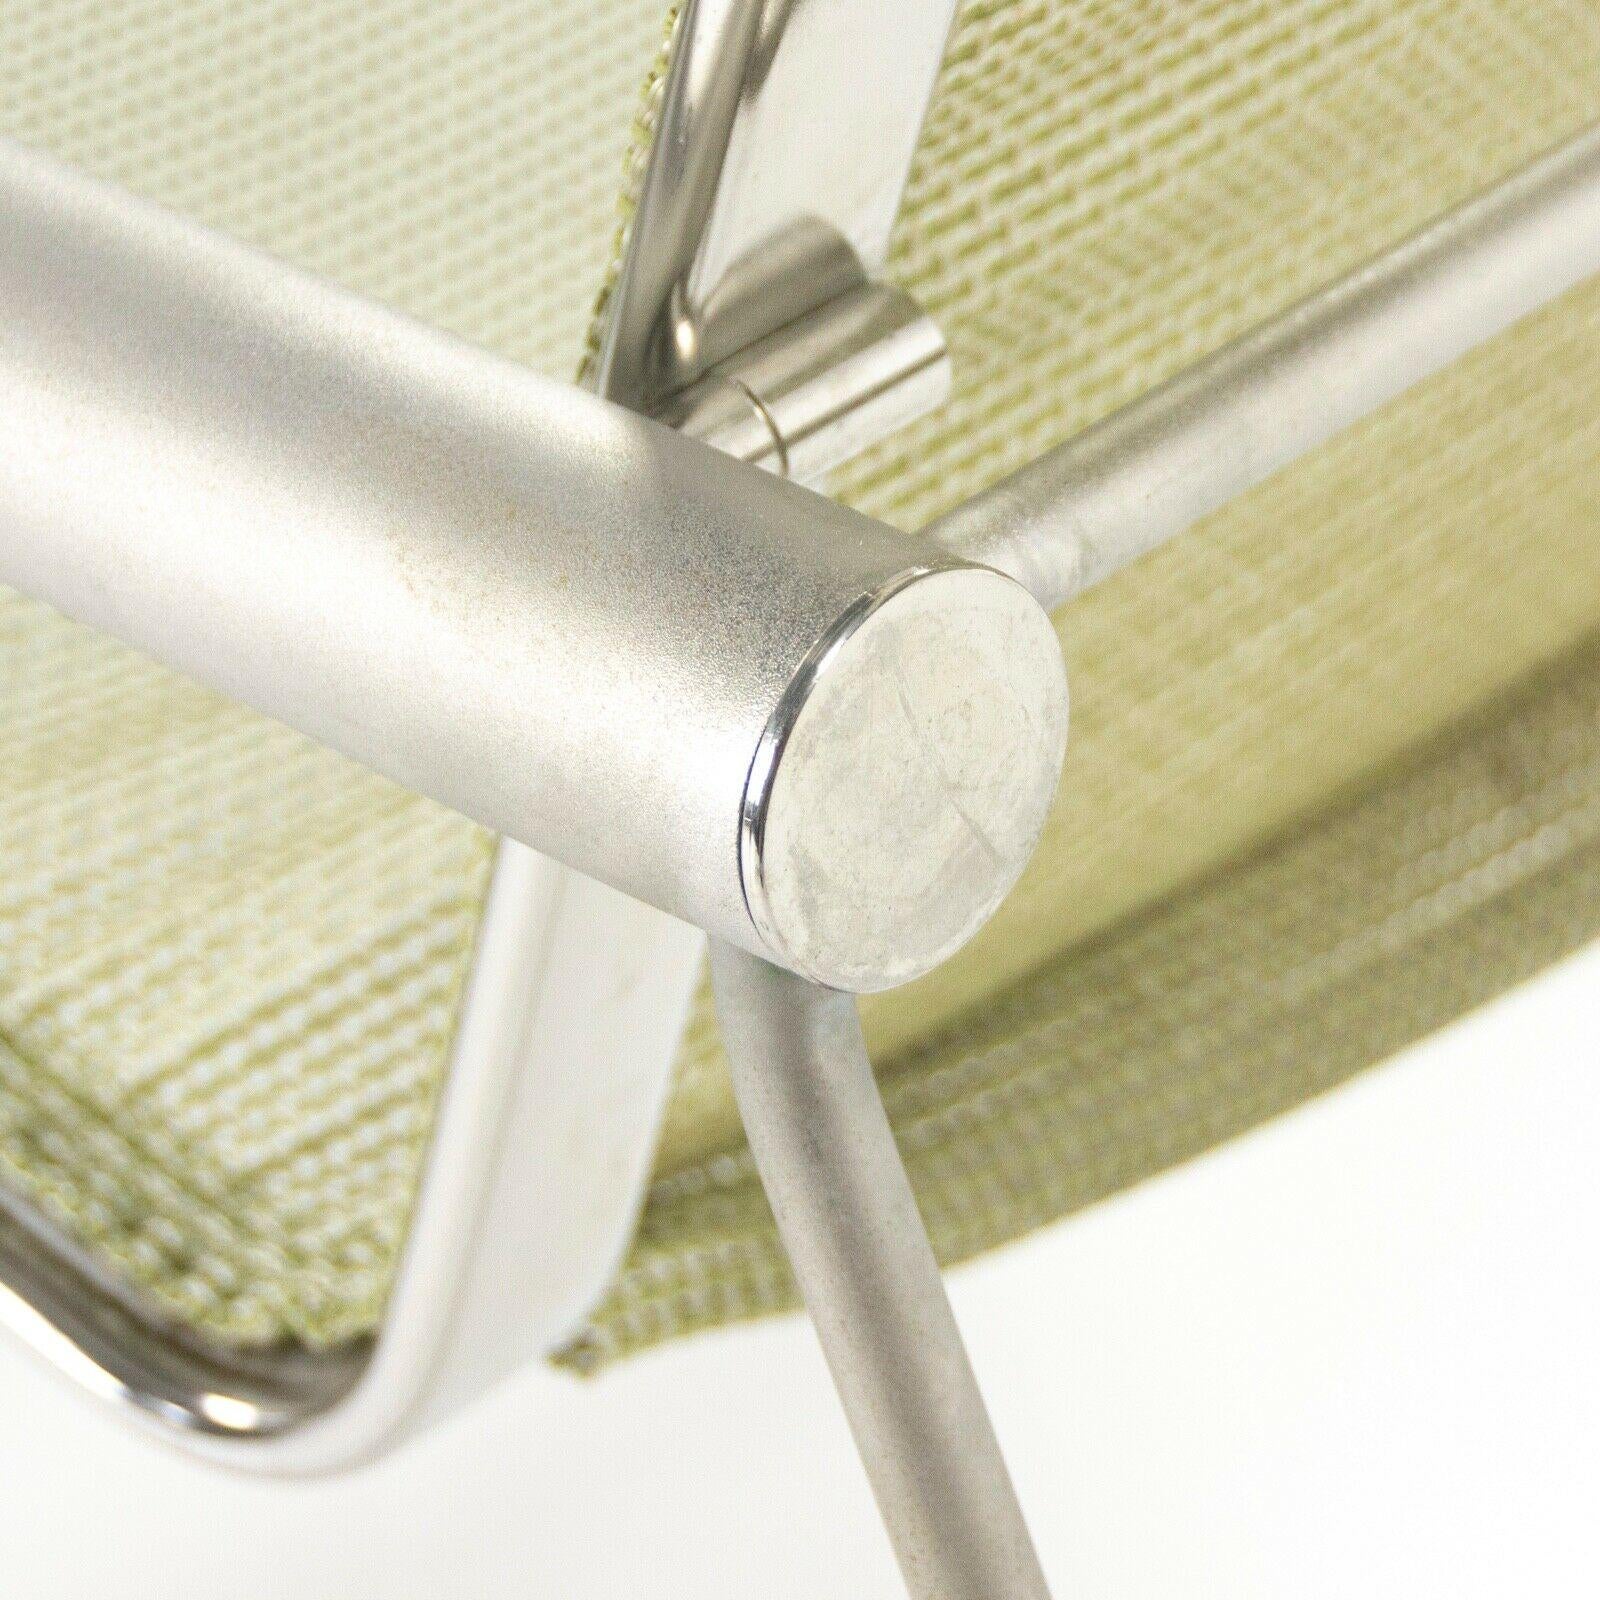 Prototype de chaise à bascule Richard Schultz 2002 Collection en acier inoxydable et maille 3